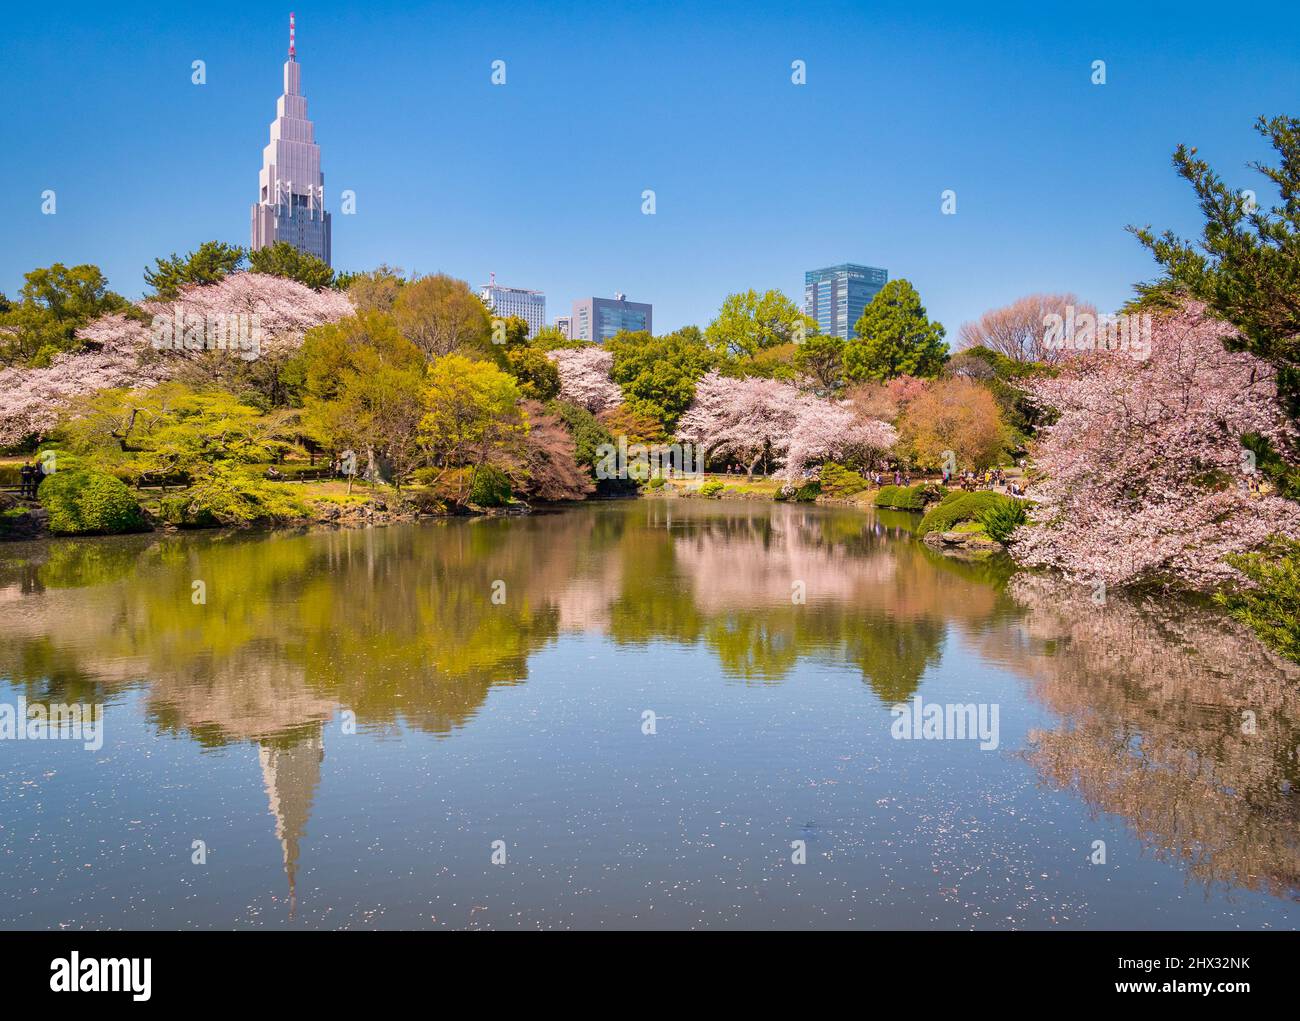 4 April 2019: Tokyo, Japan - Cherry blossom and Shinjuku buildings reflected in the lake in Shinjuku Gyoen National Garden, Tokyo. Stock Photo